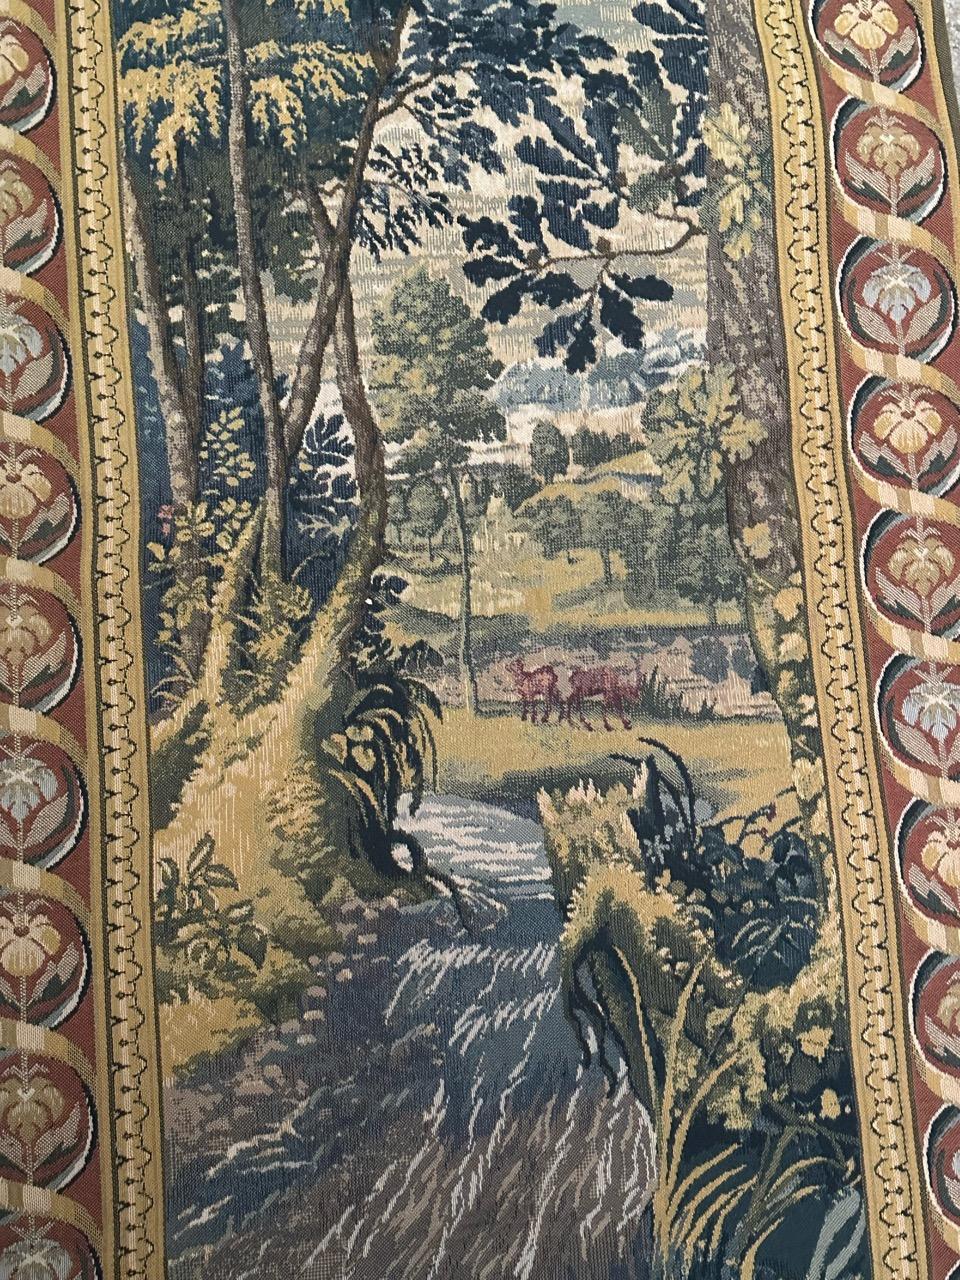 Schöne Mitte des Jahrhunderts Französisch mechanische Wandteppich mit schönen Design eines 18. Jahrhunderts aubusson Wandteppich mit schönen Farben, mit mechanischen Jaquar Herstellung mit Wolle und Baumwolle gewebt.

✨✨✨
